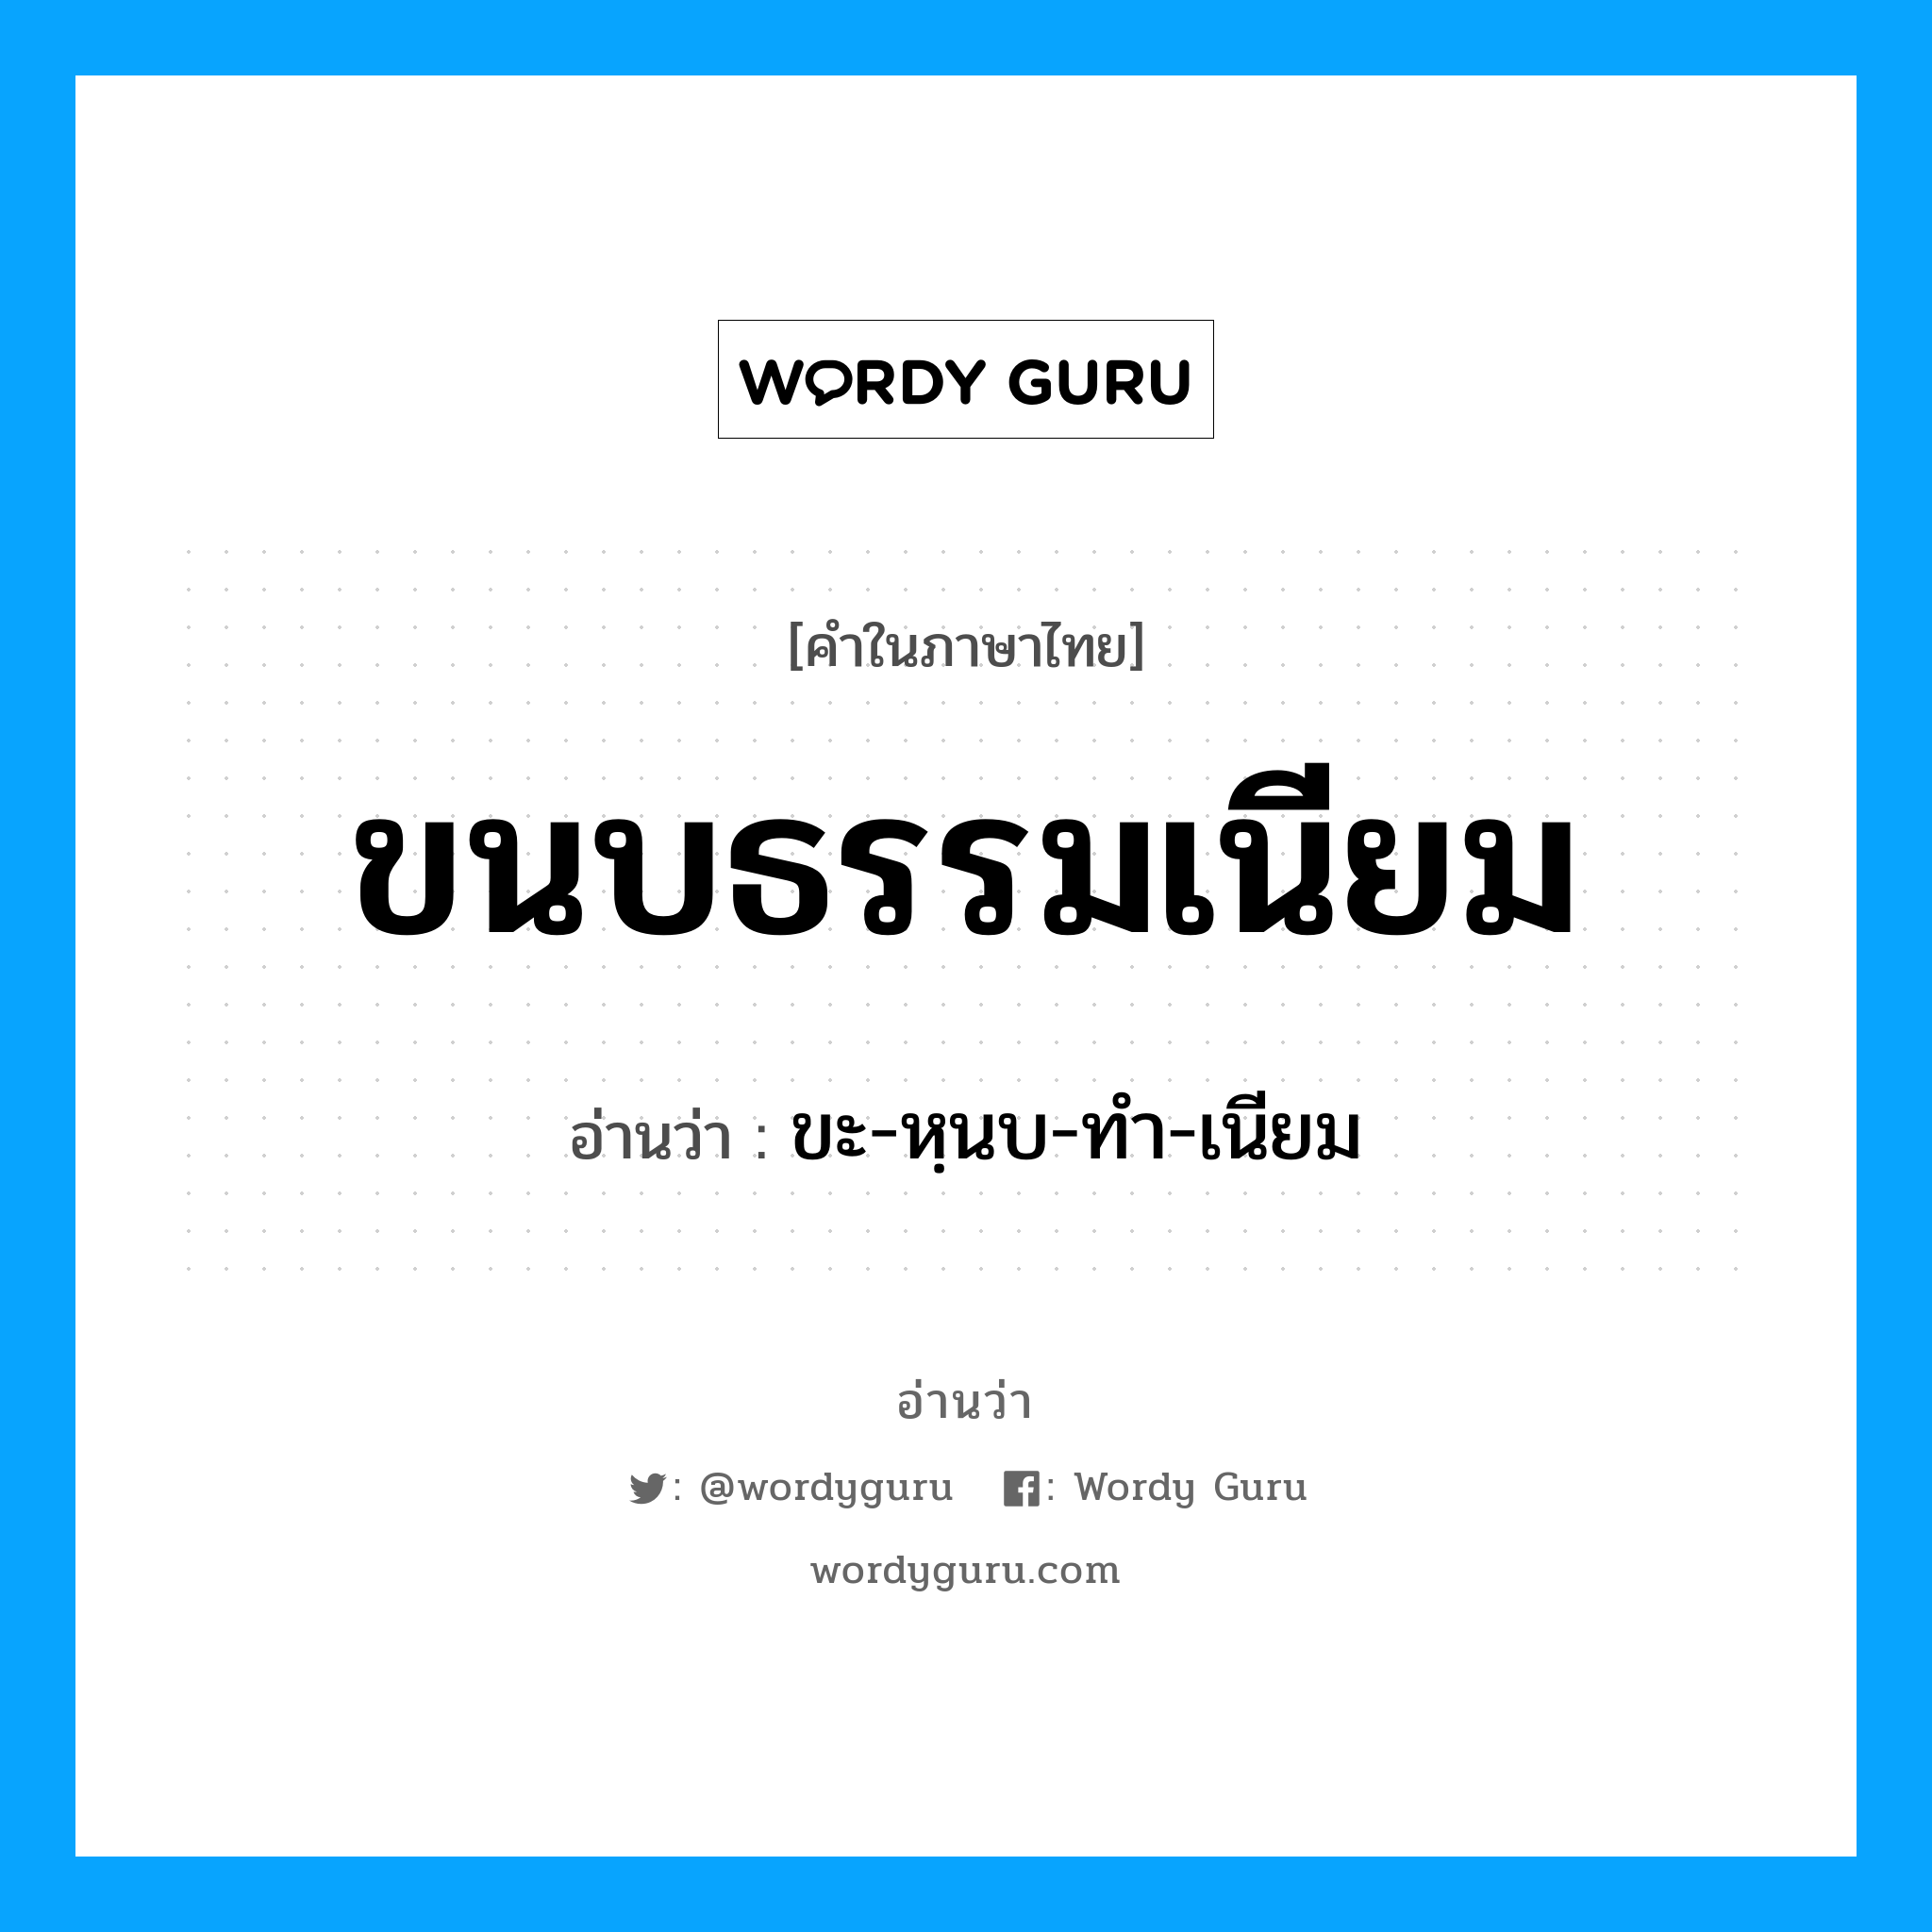 ขะ-หฺนบ-ทำ-เนียม เป็นคำอ่านของคำไหน?, คำในภาษาไทย ขะ-หฺนบ-ทำ-เนียม อ่านว่า ขนบธรรมเนียม